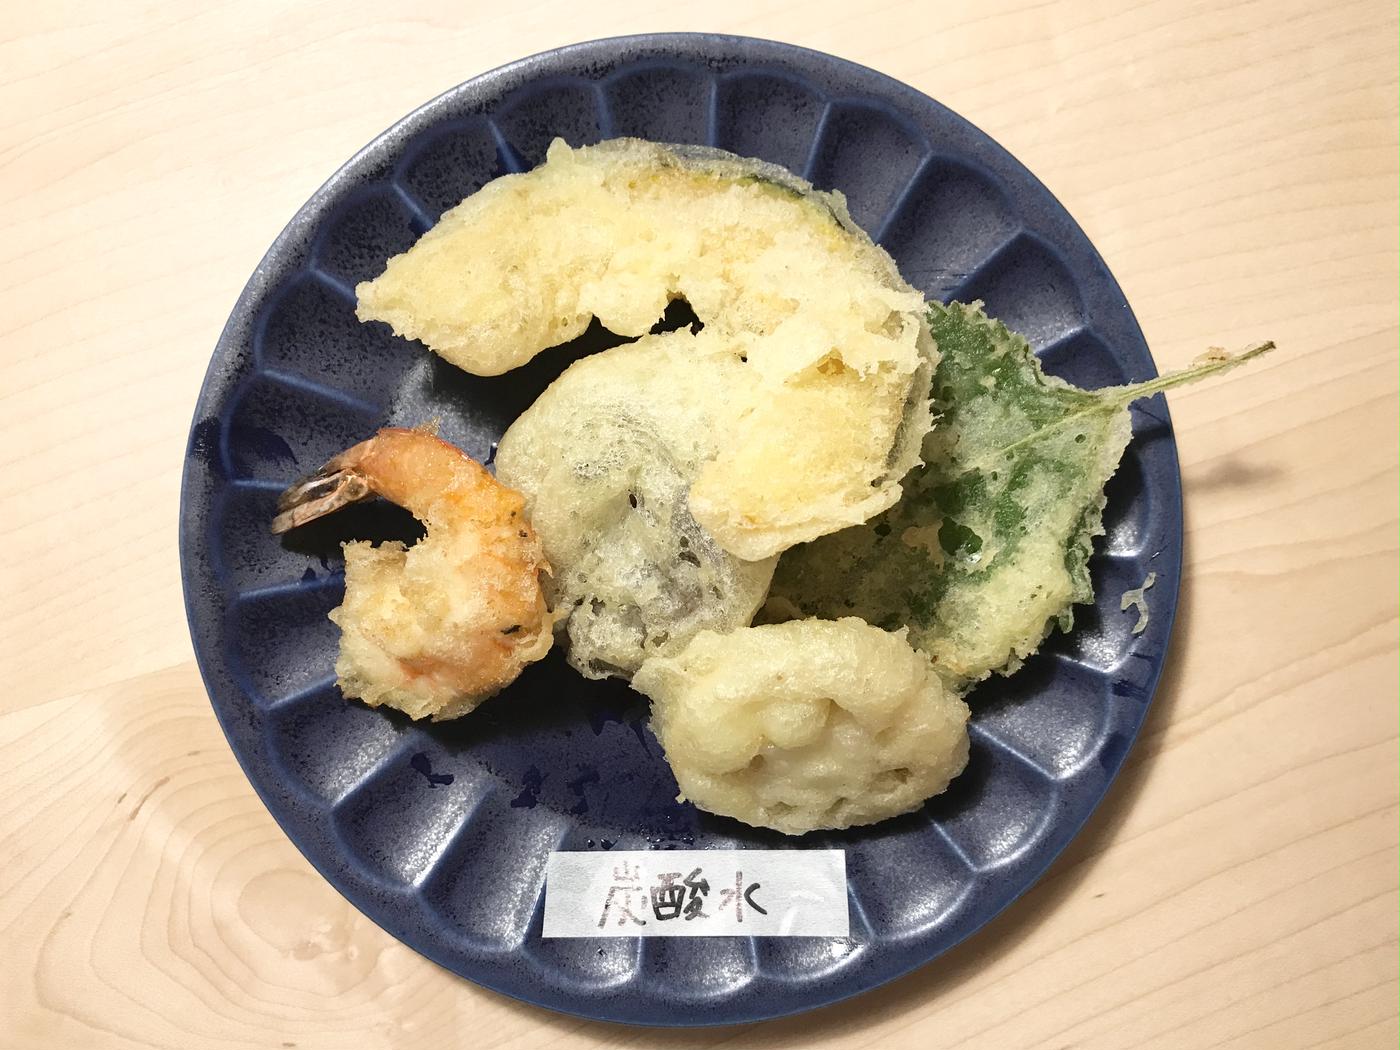 天ぷらをサクサクに揚げる方法は おすすめの裏技を全部試してみた トクバイニュース